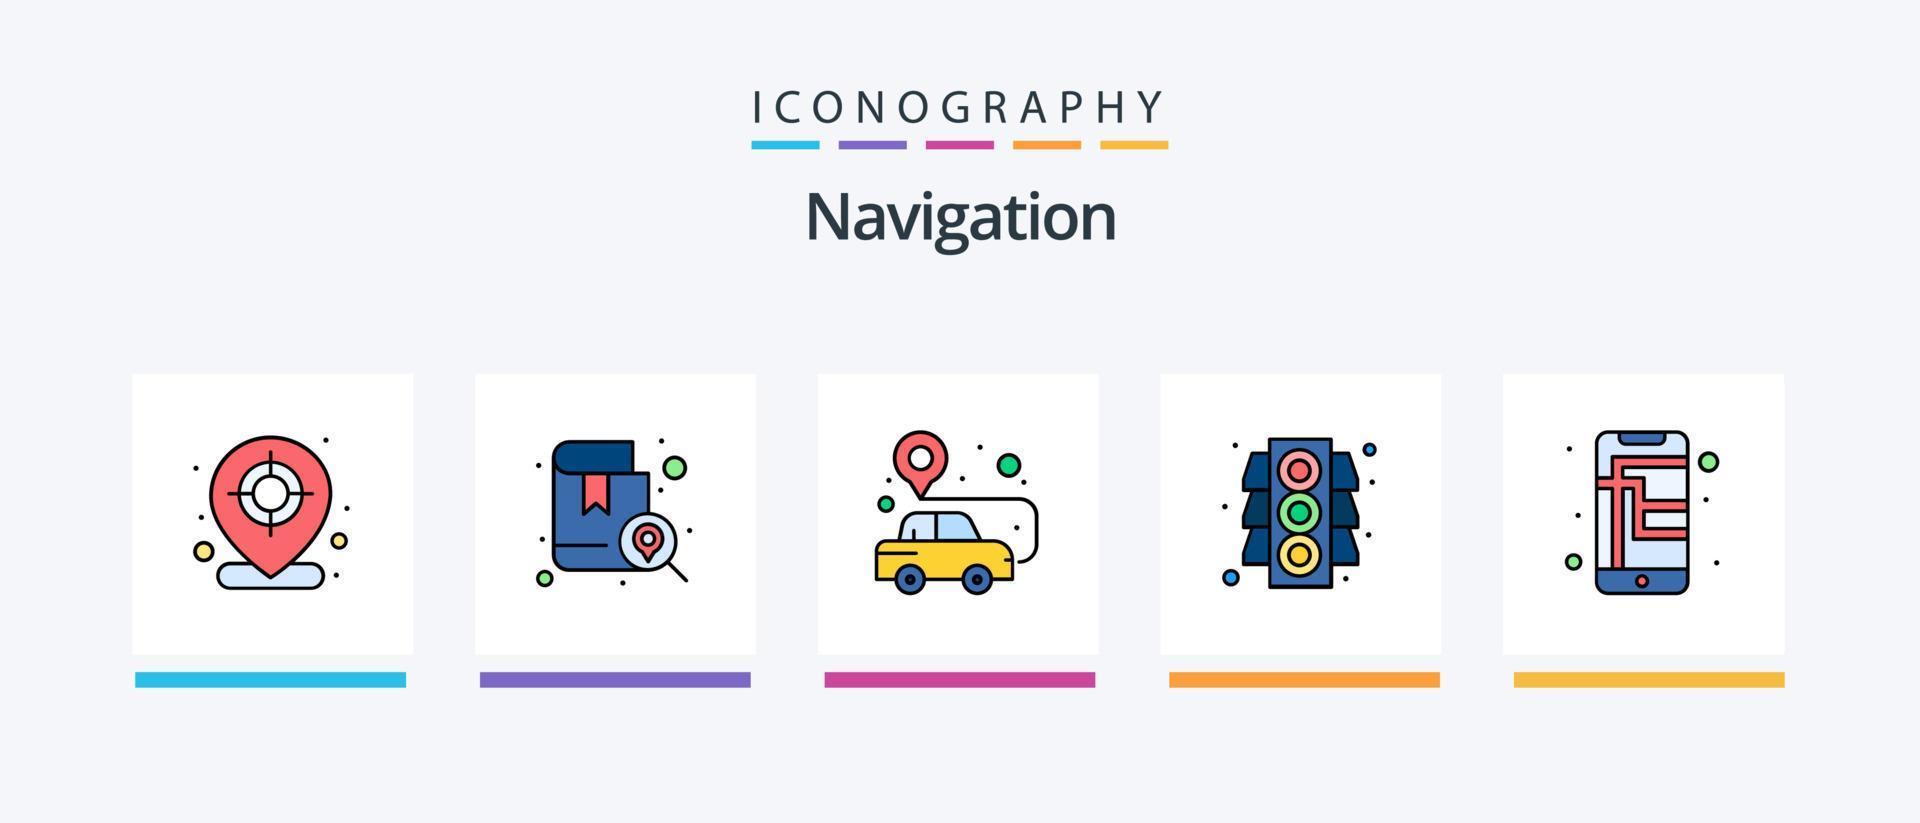 la línea de navegación llenó el paquete de 5 iconos, incluido el lugar. ubicación. navegación. regla. señal. diseño de iconos creativos vector